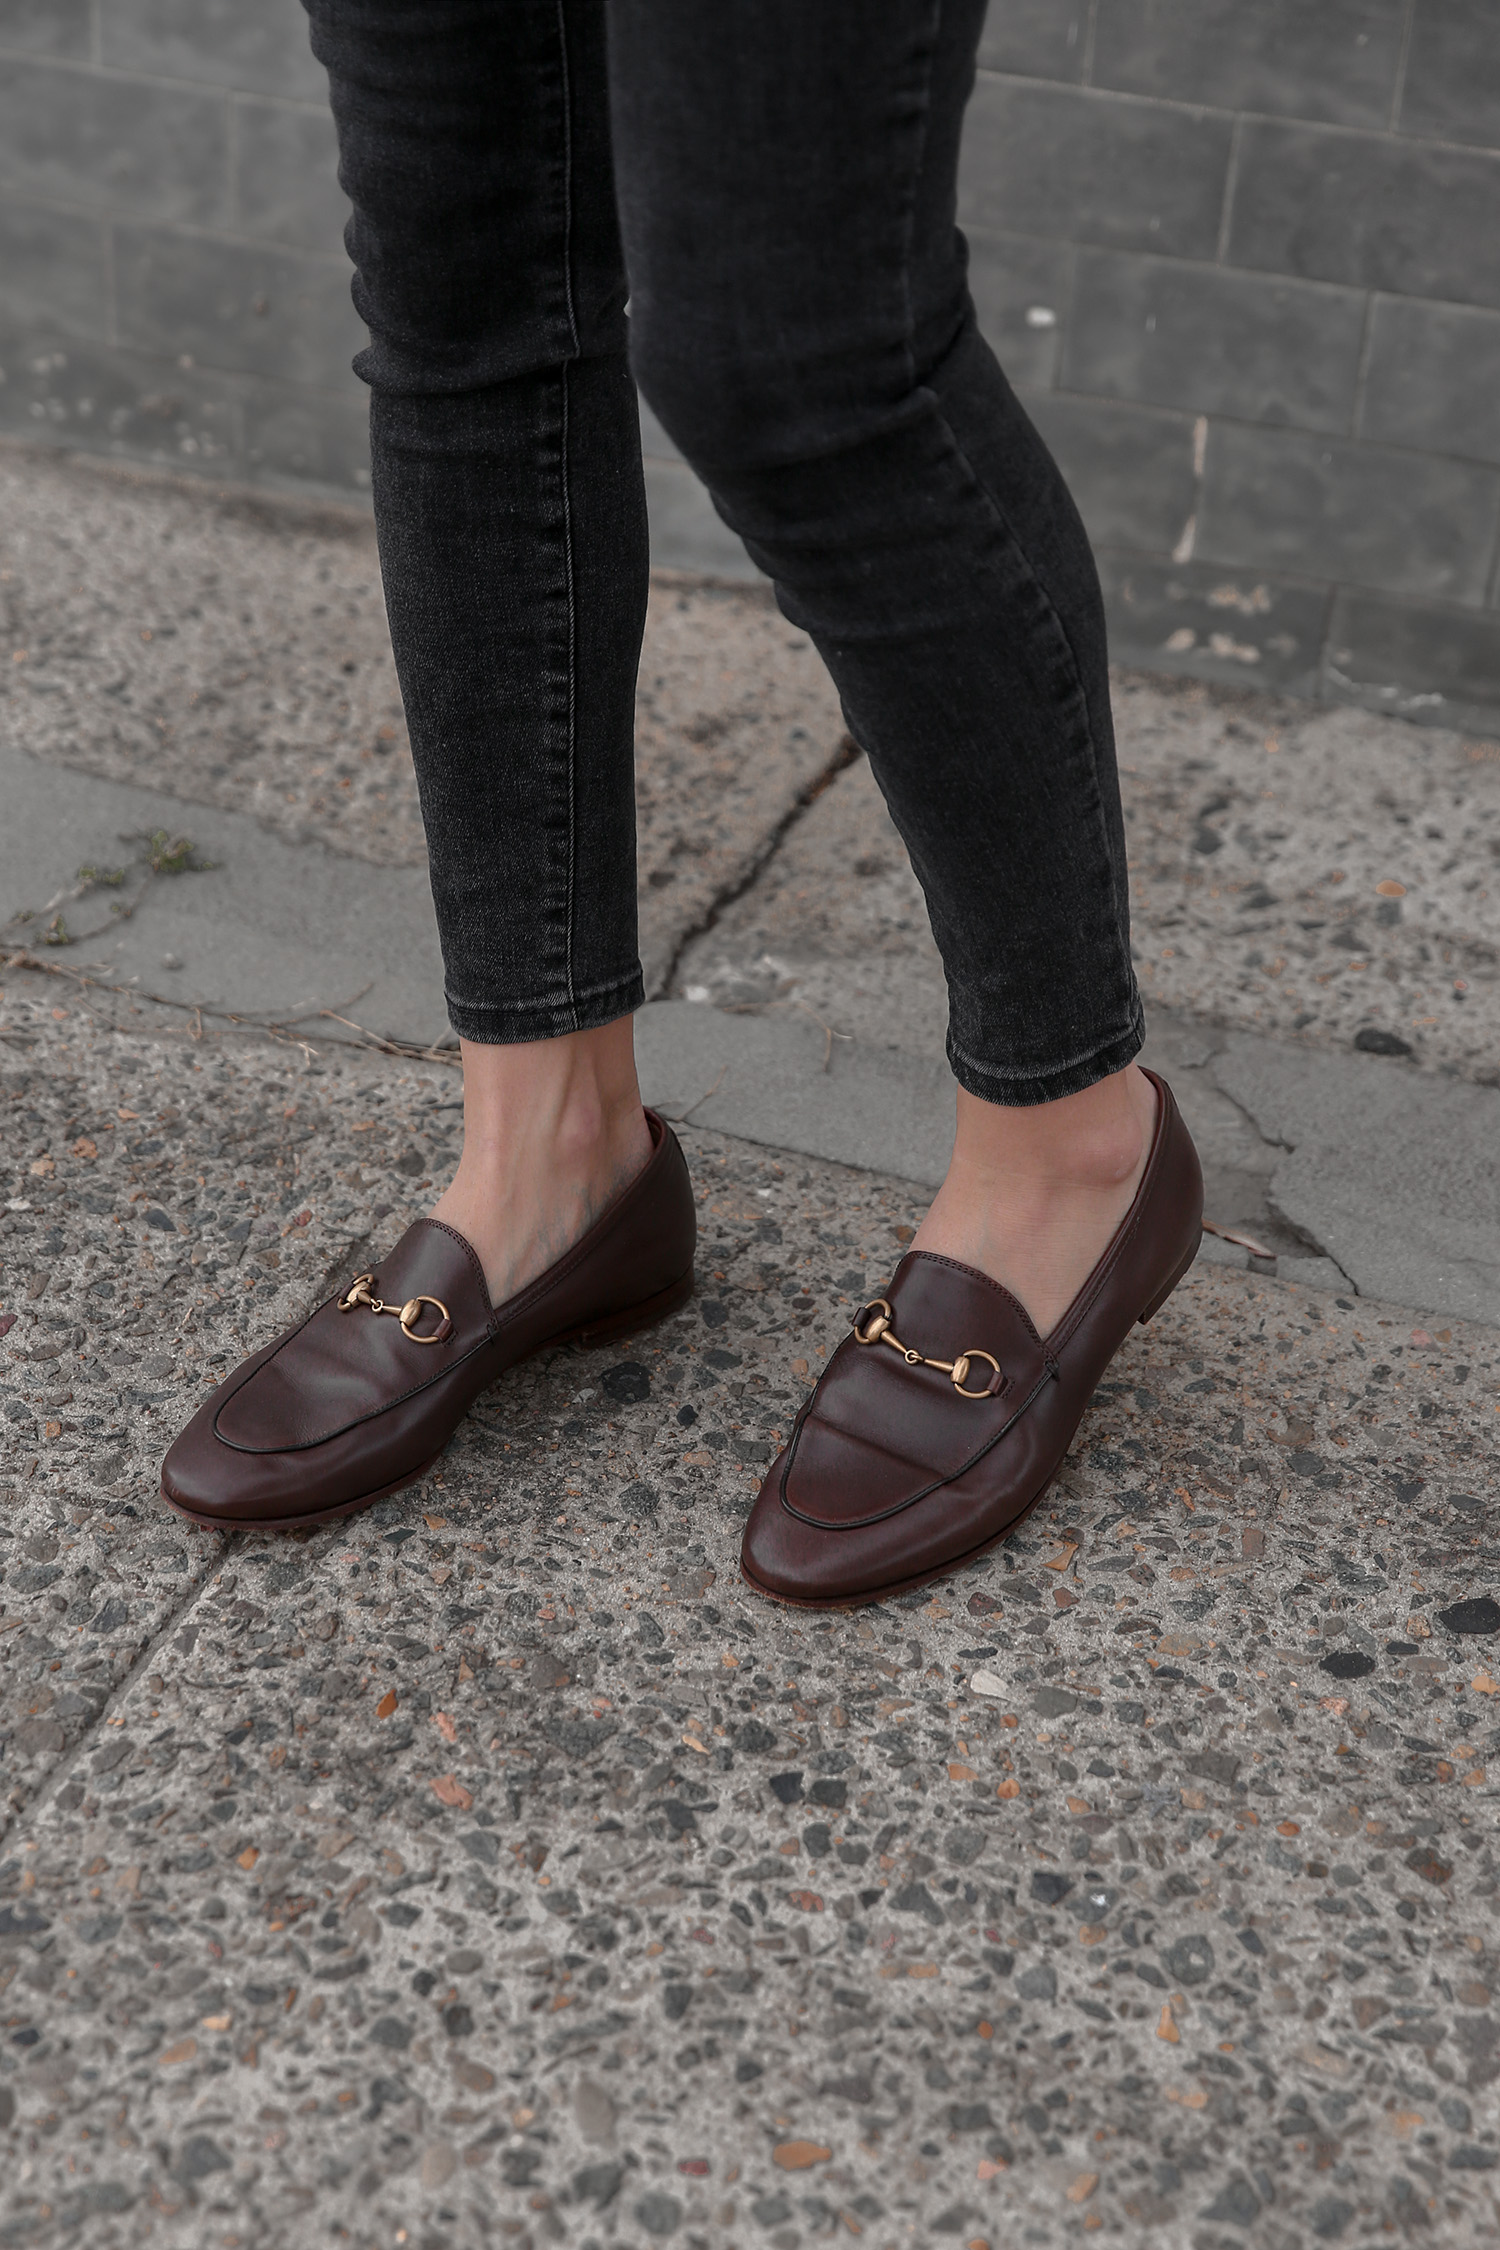 Gucci Jordaan loafers in dark brown